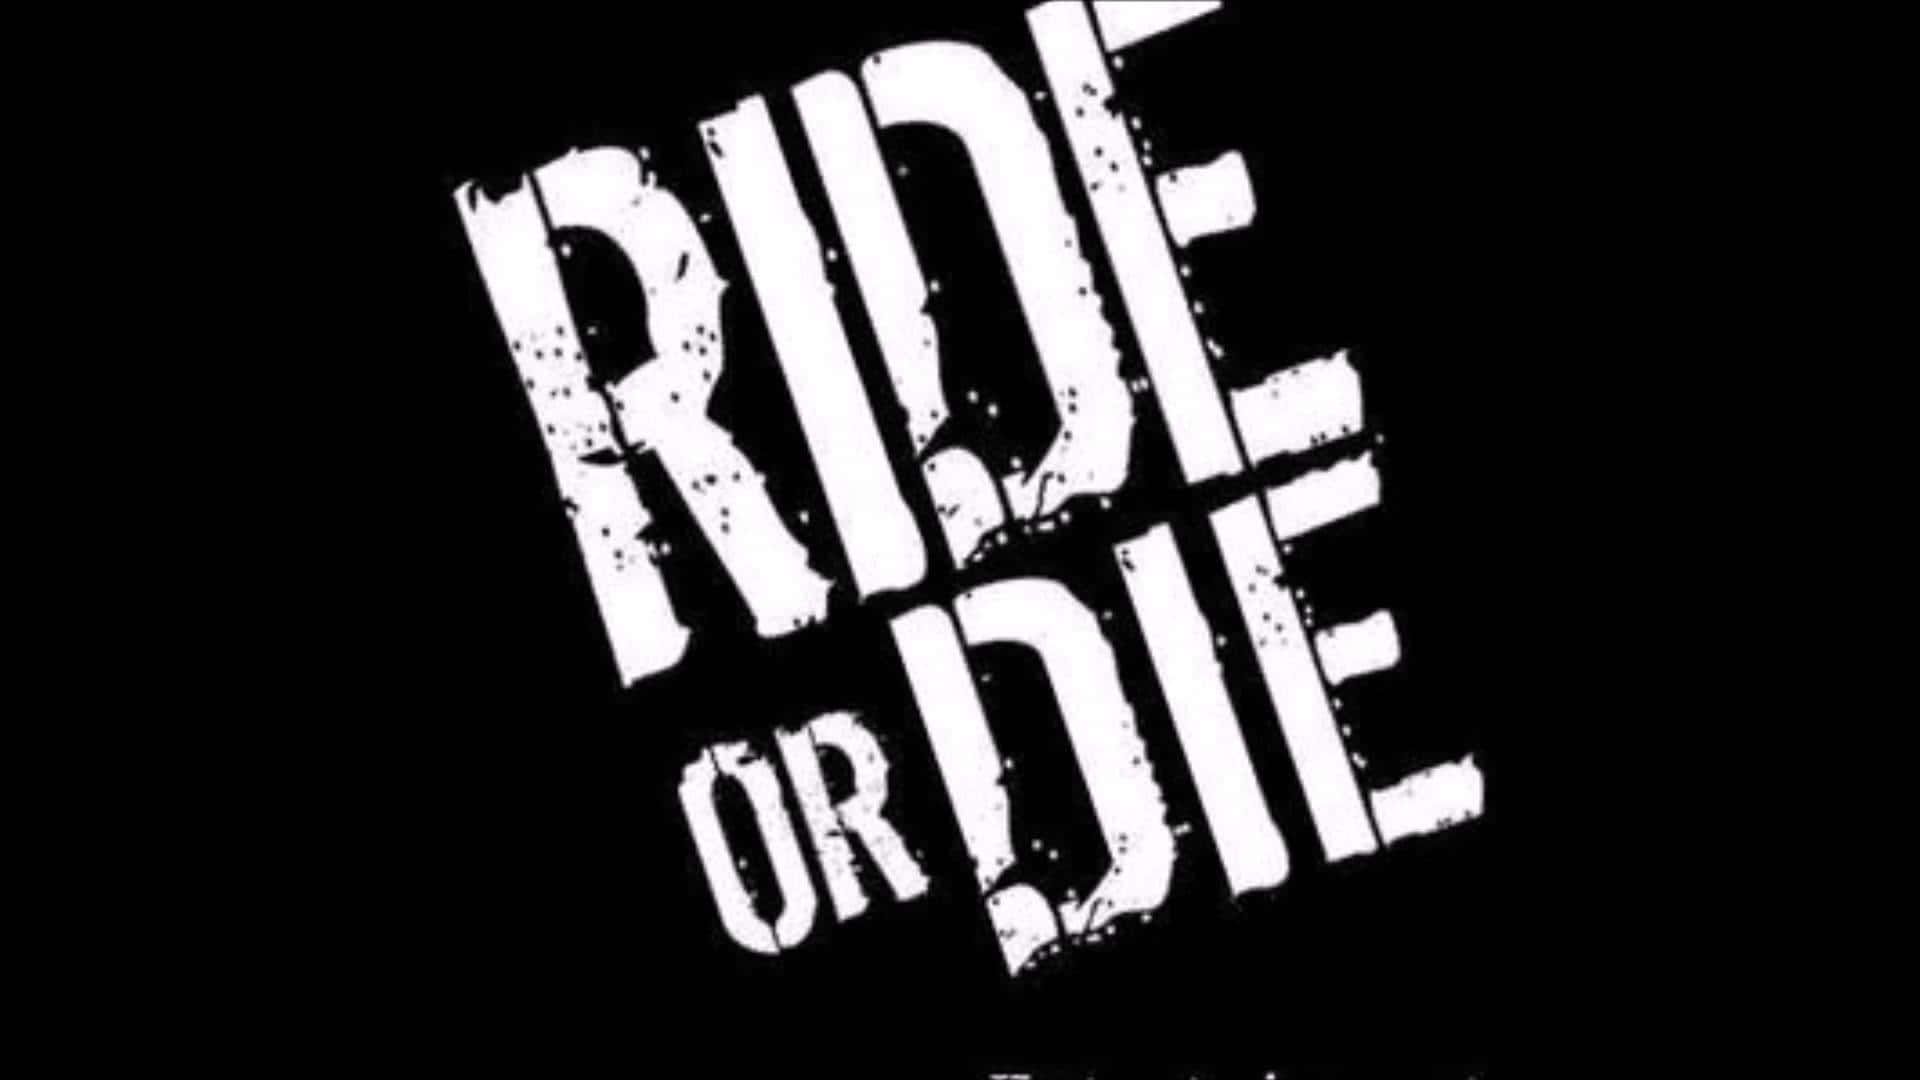 Ride or die sfdf HD phone wallpaper  Peakpx